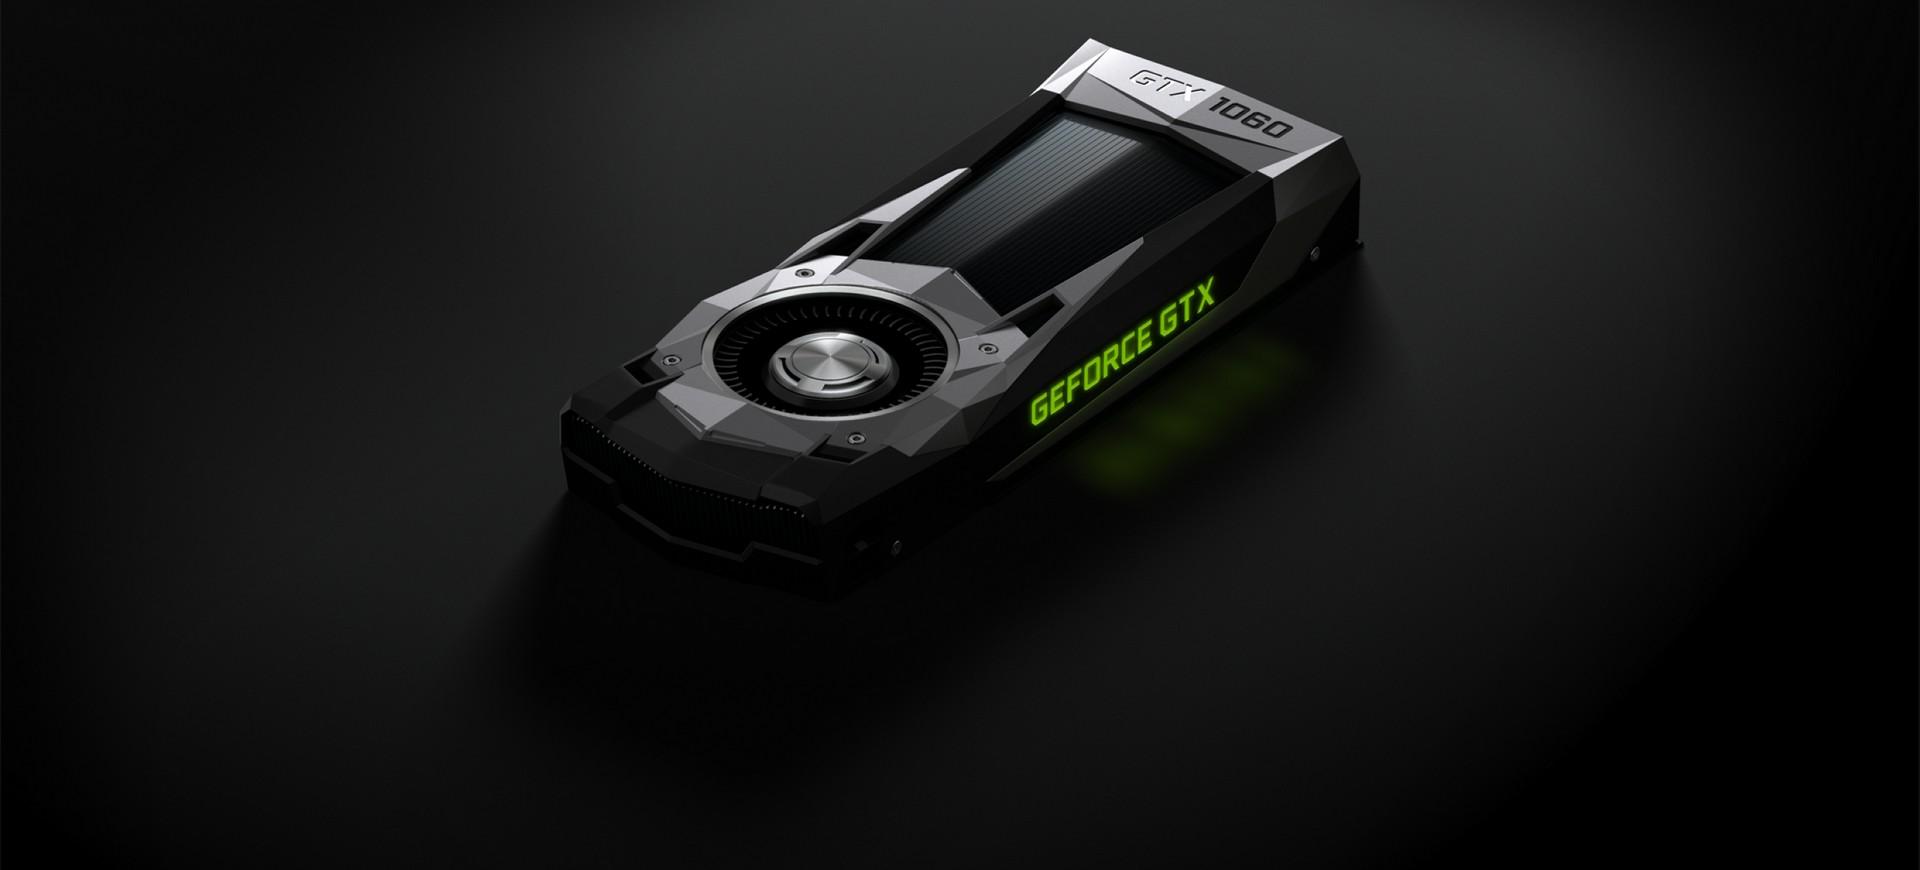 NVIDIA công bố chính thức GeForce GTX 1060